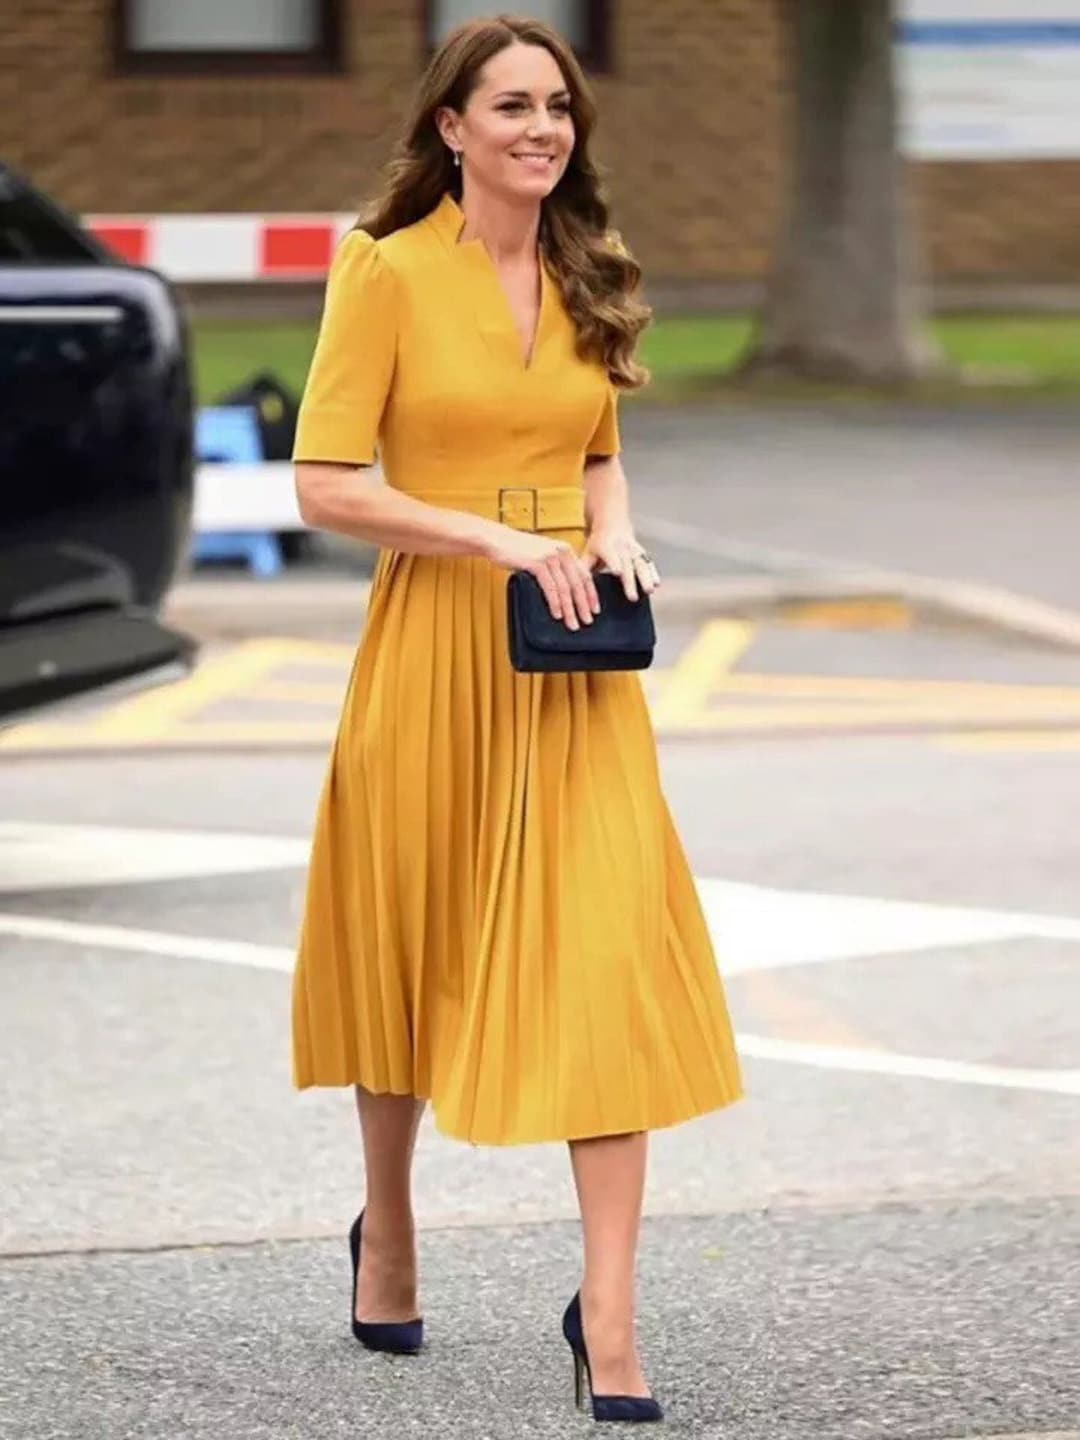 Kate Middleton Dresses